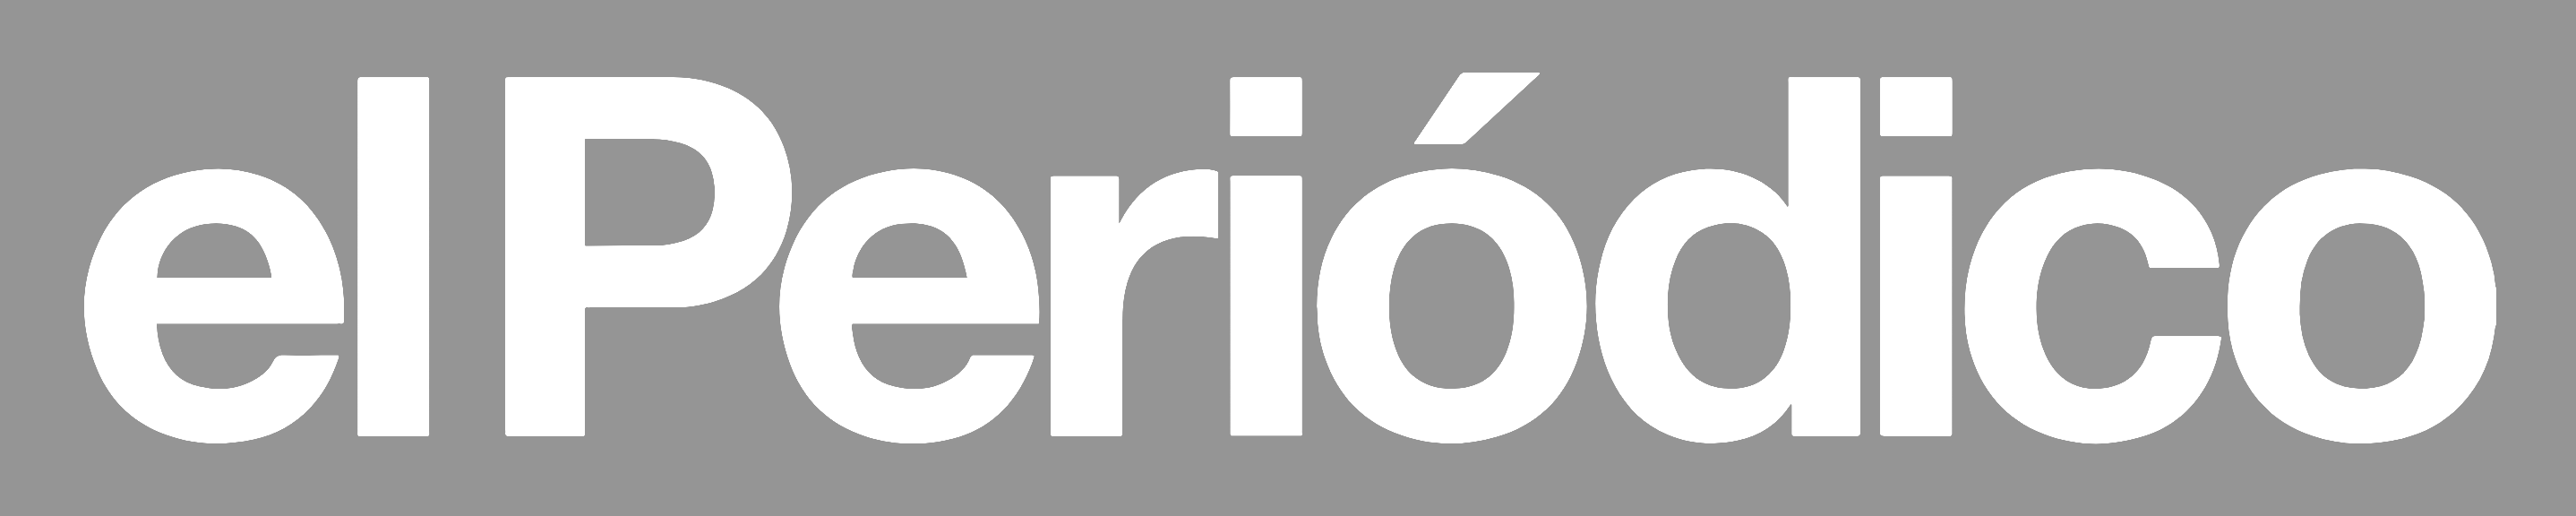 Logo-el-periodico.png